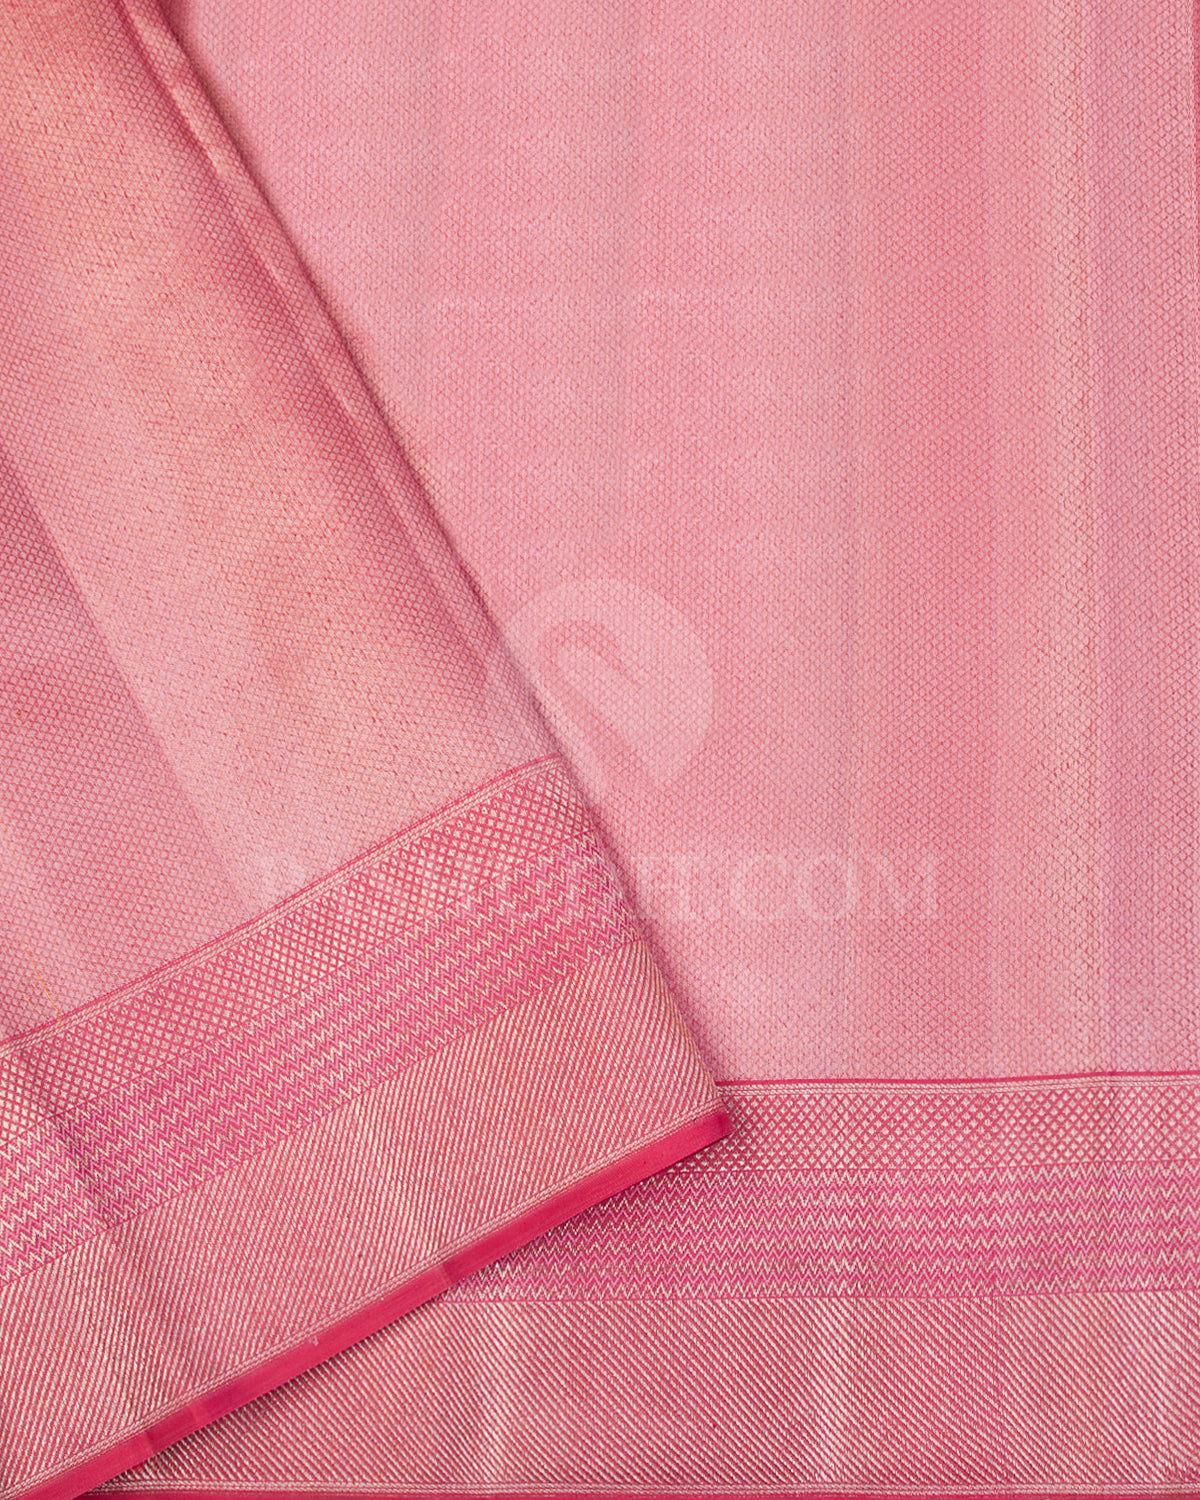 Lavender and Peachy Pink Kanjivaram Silk Saree - D537(B) - View 2